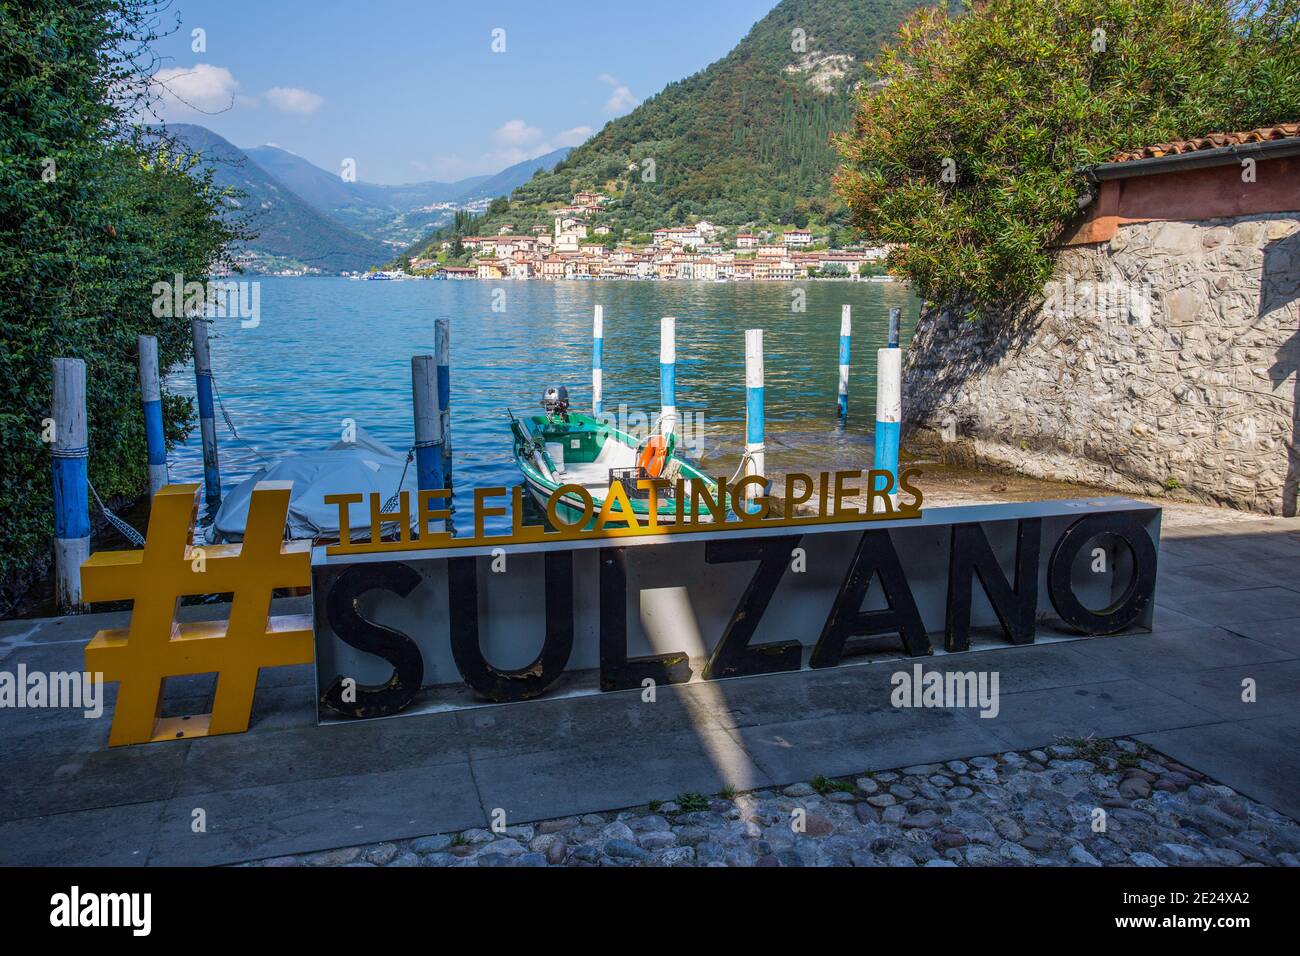 SULZANO, ITALIA, 9 DE SEPTIEMBRE de 2020 - Vista del Monte Isola desde la ciudad de Sulzano, lago Iseo, provincia de Brescia, Italia. Foto de stock